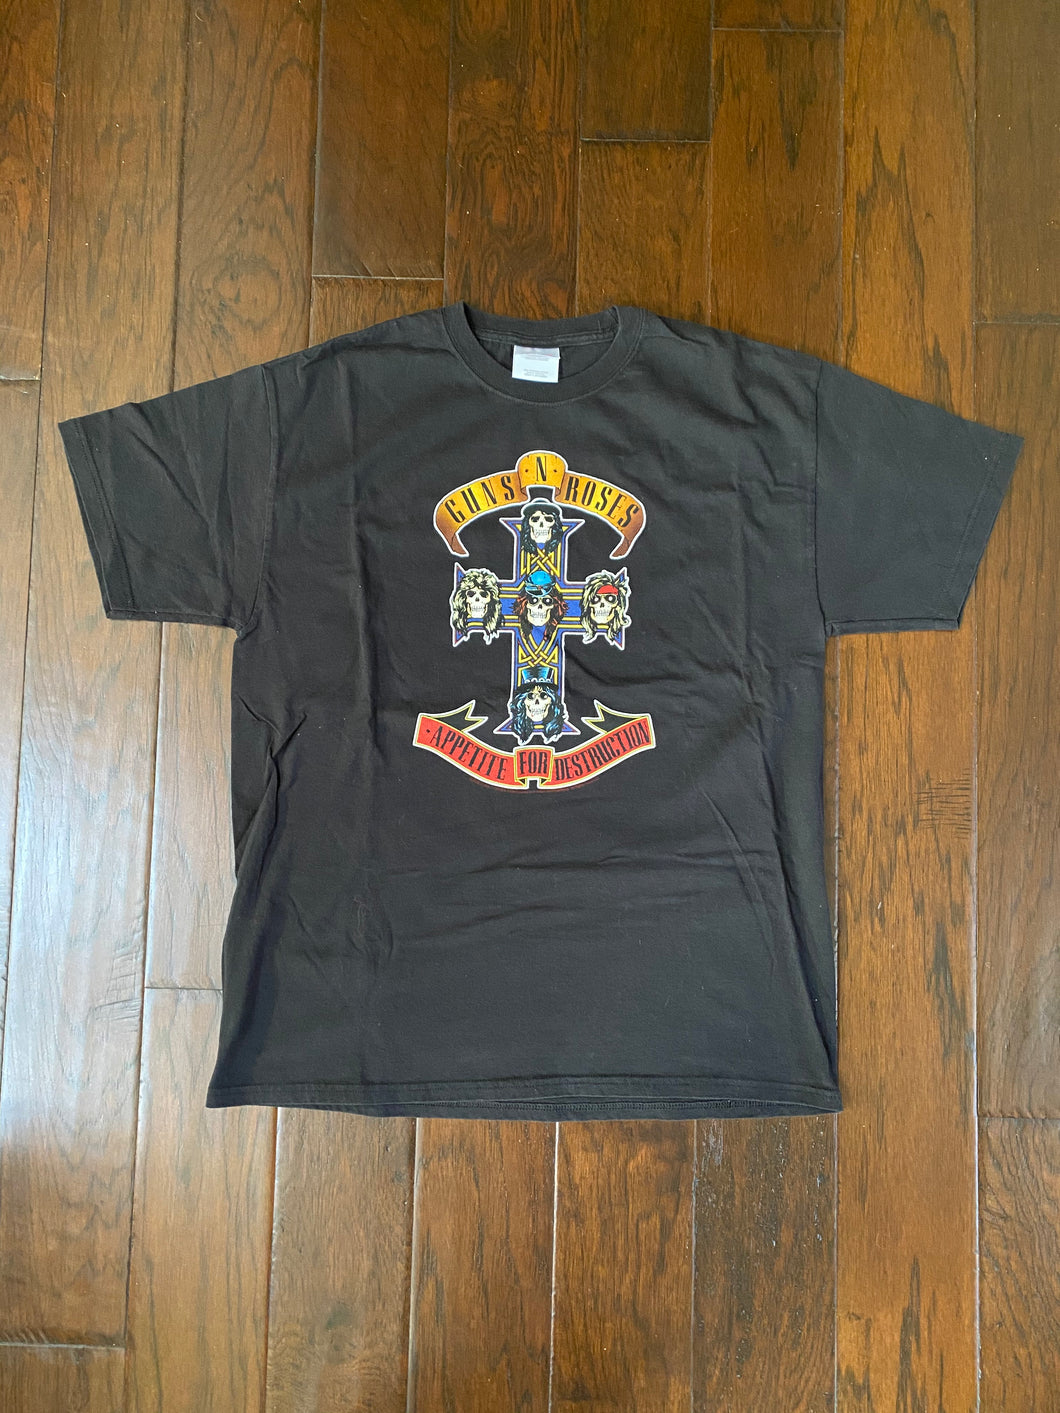 Guns N’ Roses 2005 “Appetite for Destruction” Vintage Distressed T-shirt